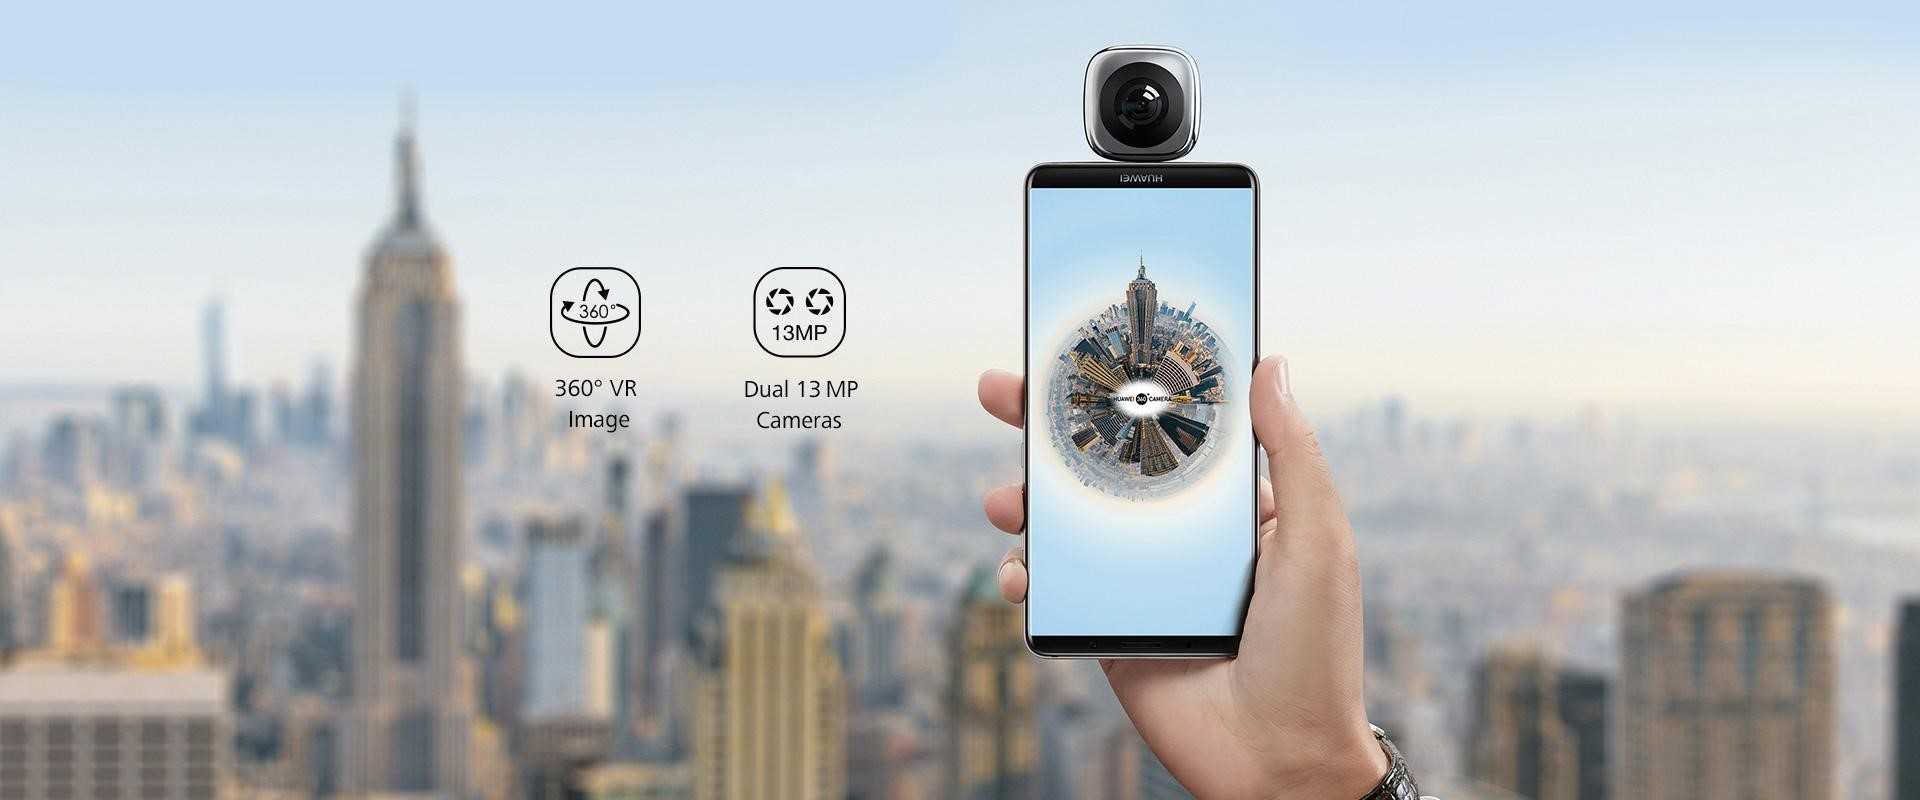 سجل وشارك أفضل لحظات حياتك في مقاطع فيديو 360 درجة كاملة لا تصدق باستخدام كاميرا Huawei Envizion 360.